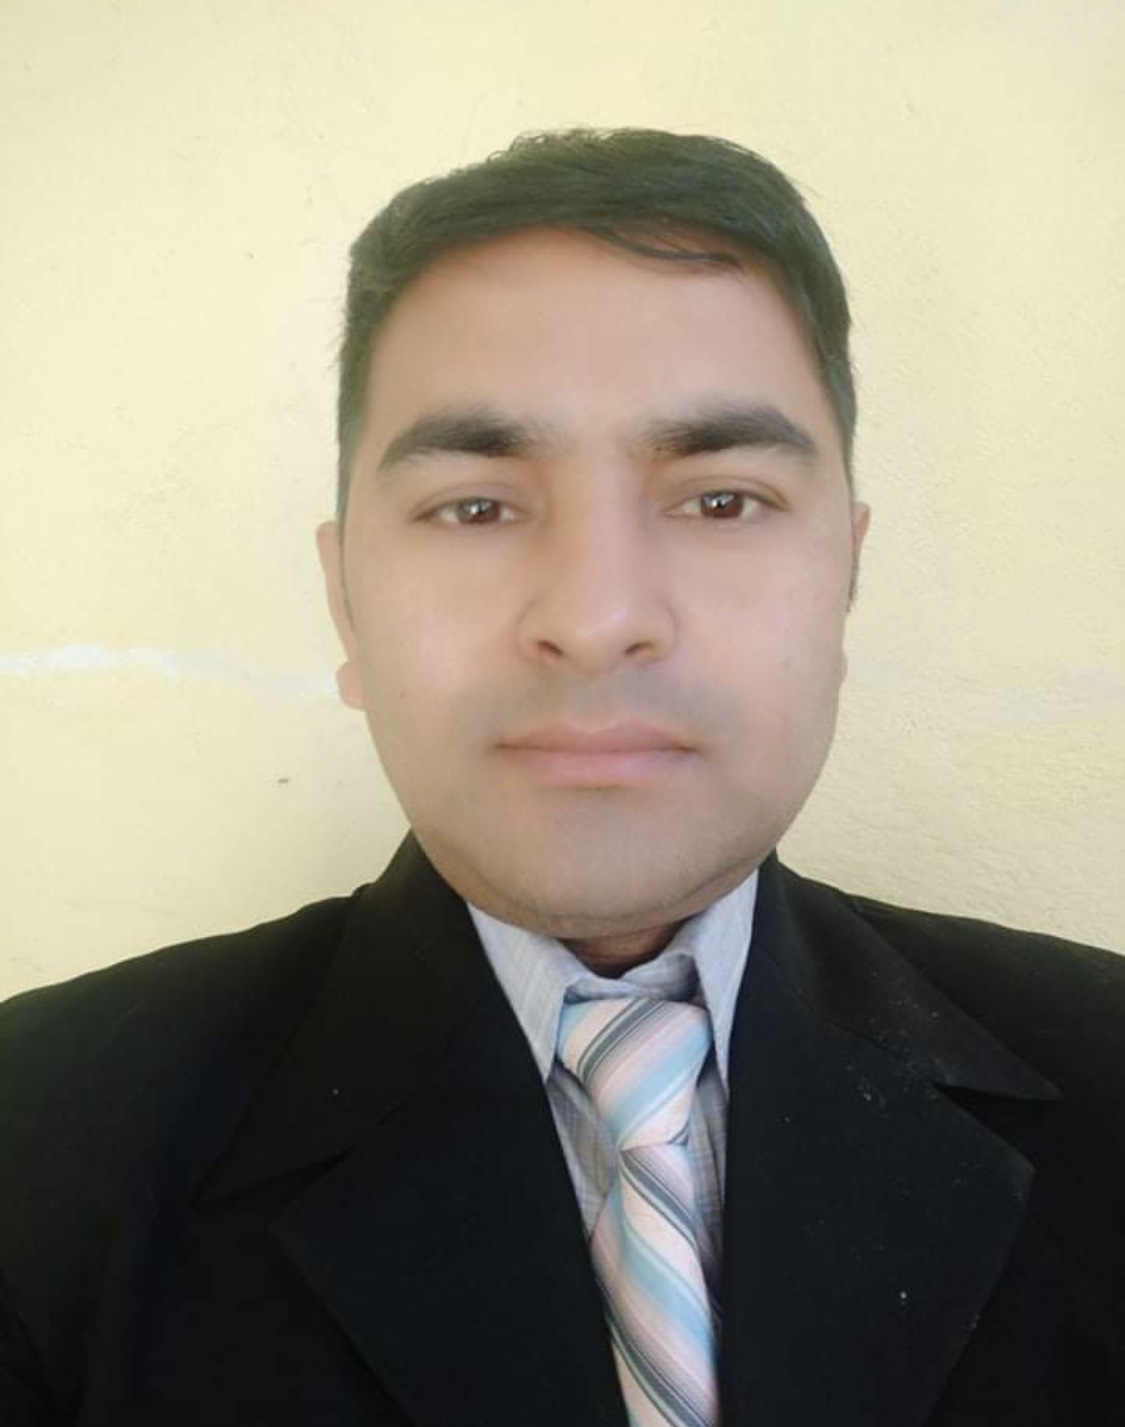 Mr. Ganesh Bahadur Shrestha